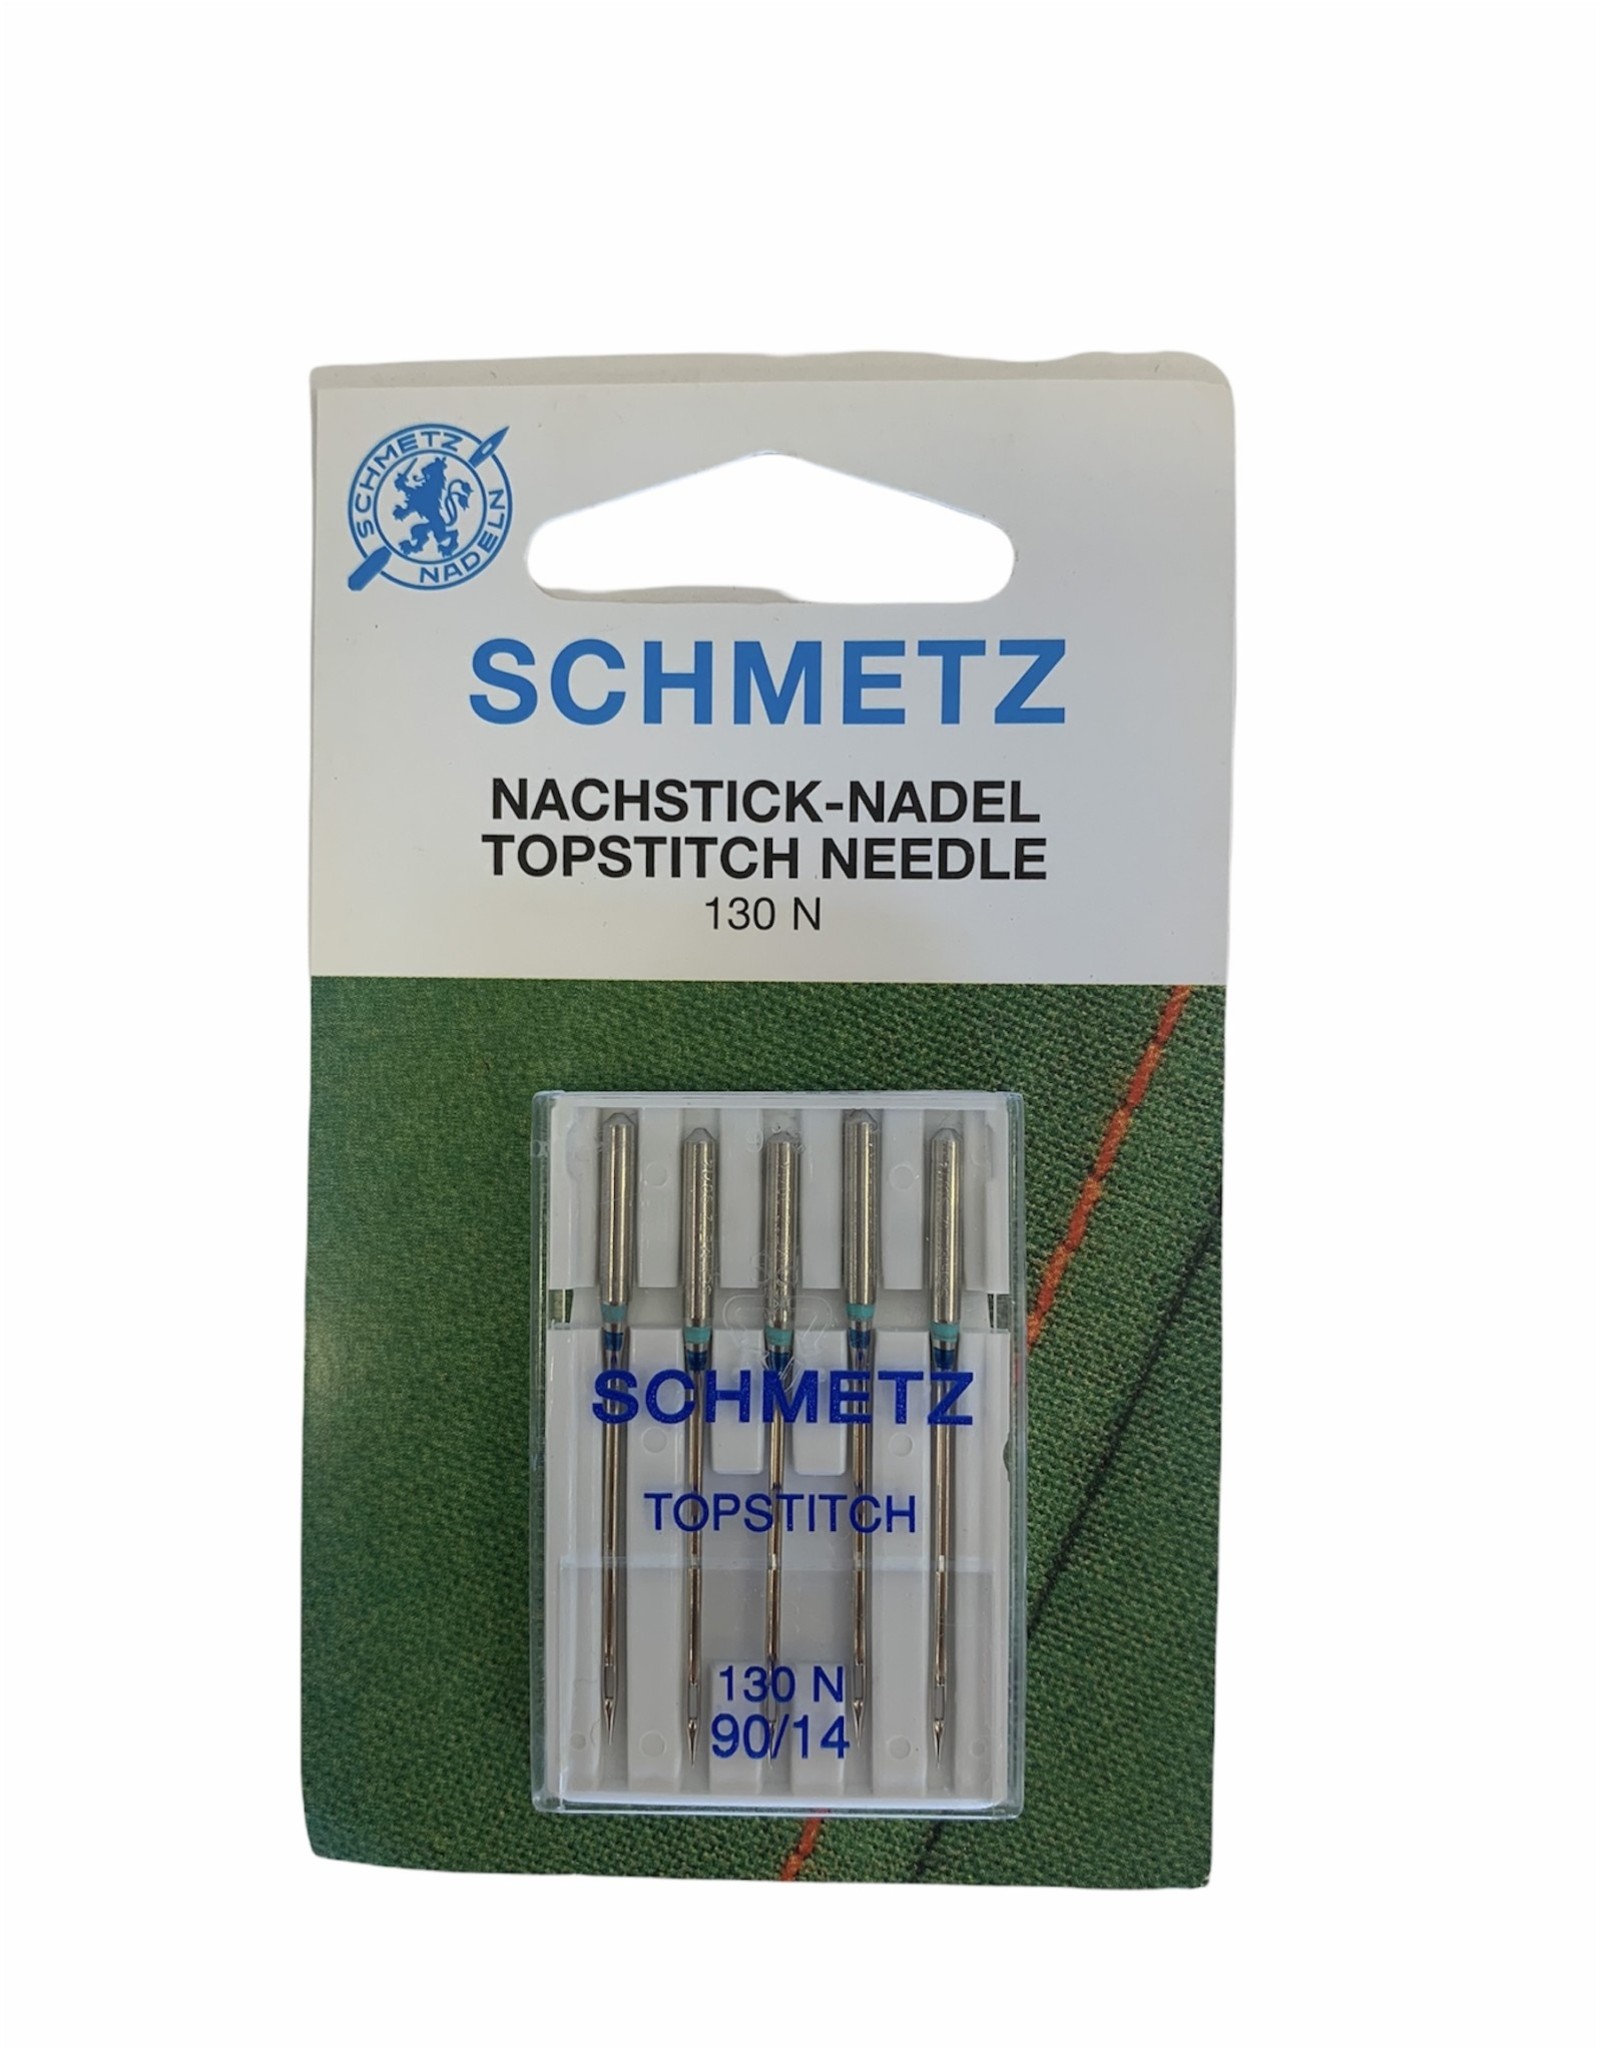 Schmetz Schmetz Topstitch Needle 90/14, 130 N